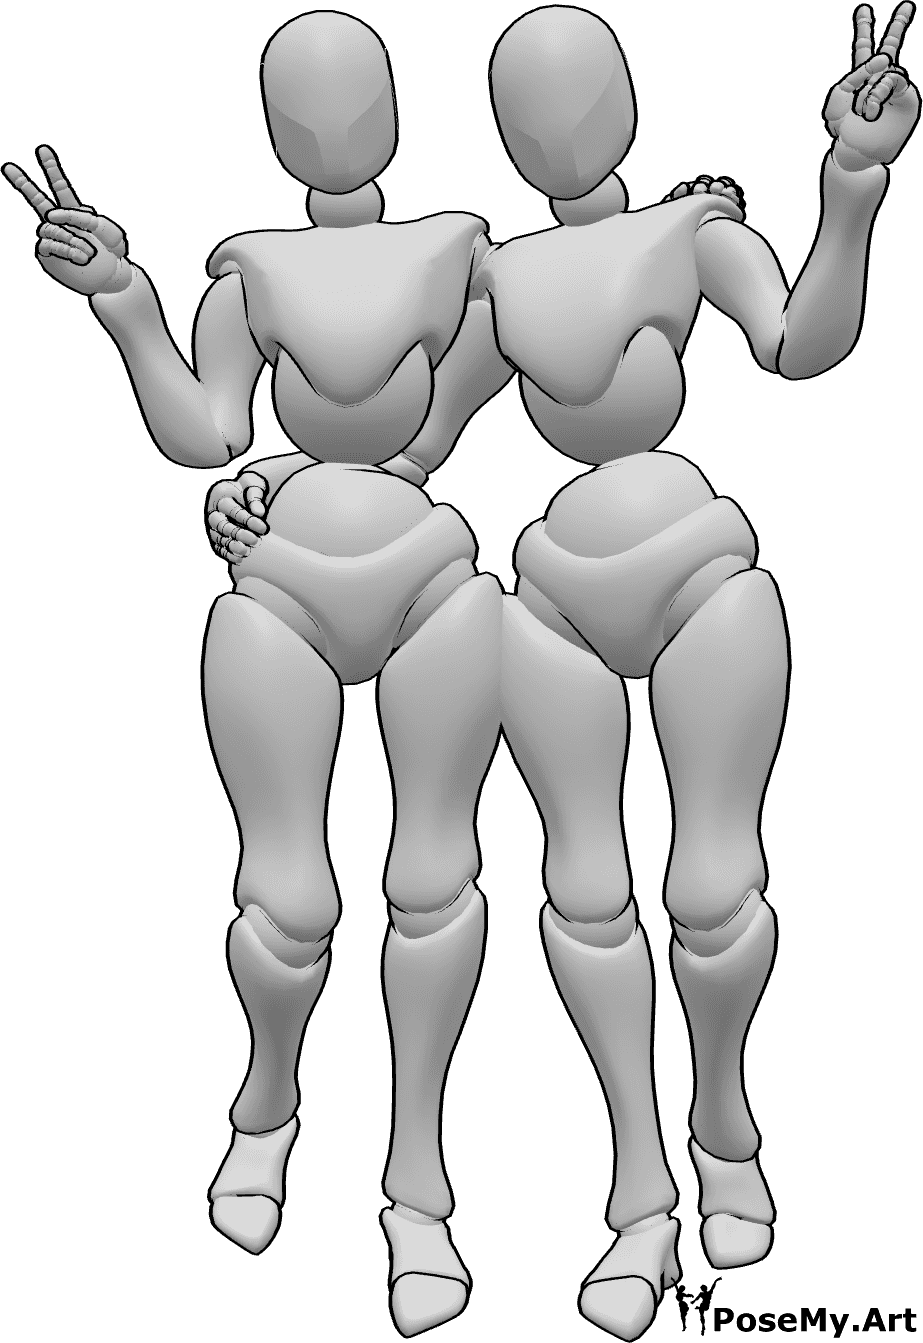 Référence des poses- Femmes posant en signe de paix - Deux femmes sont debout, se serrant l'une contre l'autre et montrant le signe de la paix.